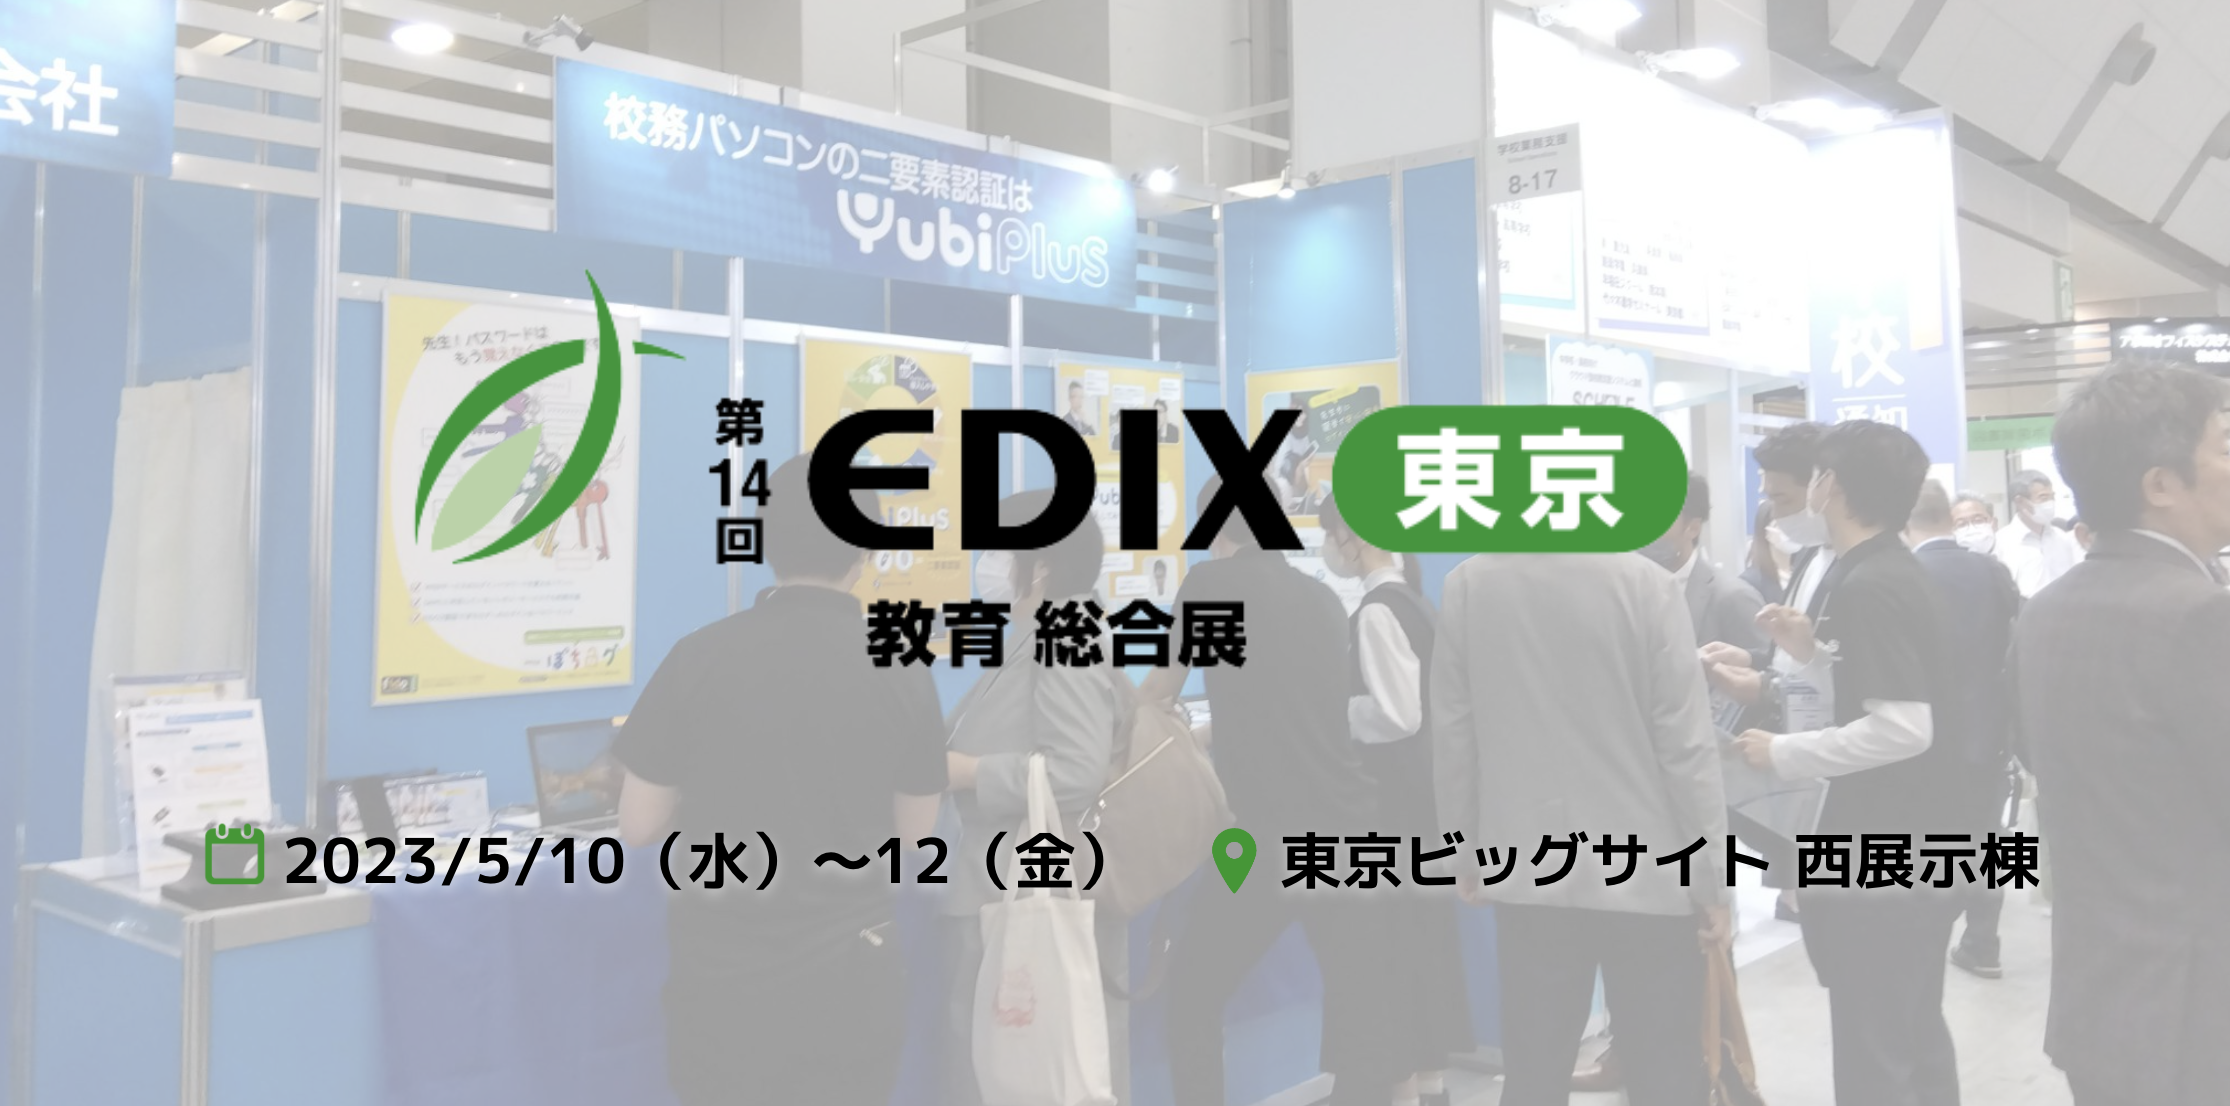 2023.5.10（水）〜12（金）東京ビッグサイト 西展示棟にて開催された第14回 EDIX（教育 総合展）に出展し、おかげさまで大盛況のうち終了となりました。 ご来場いただいた皆さま、誠にありがとうございました。